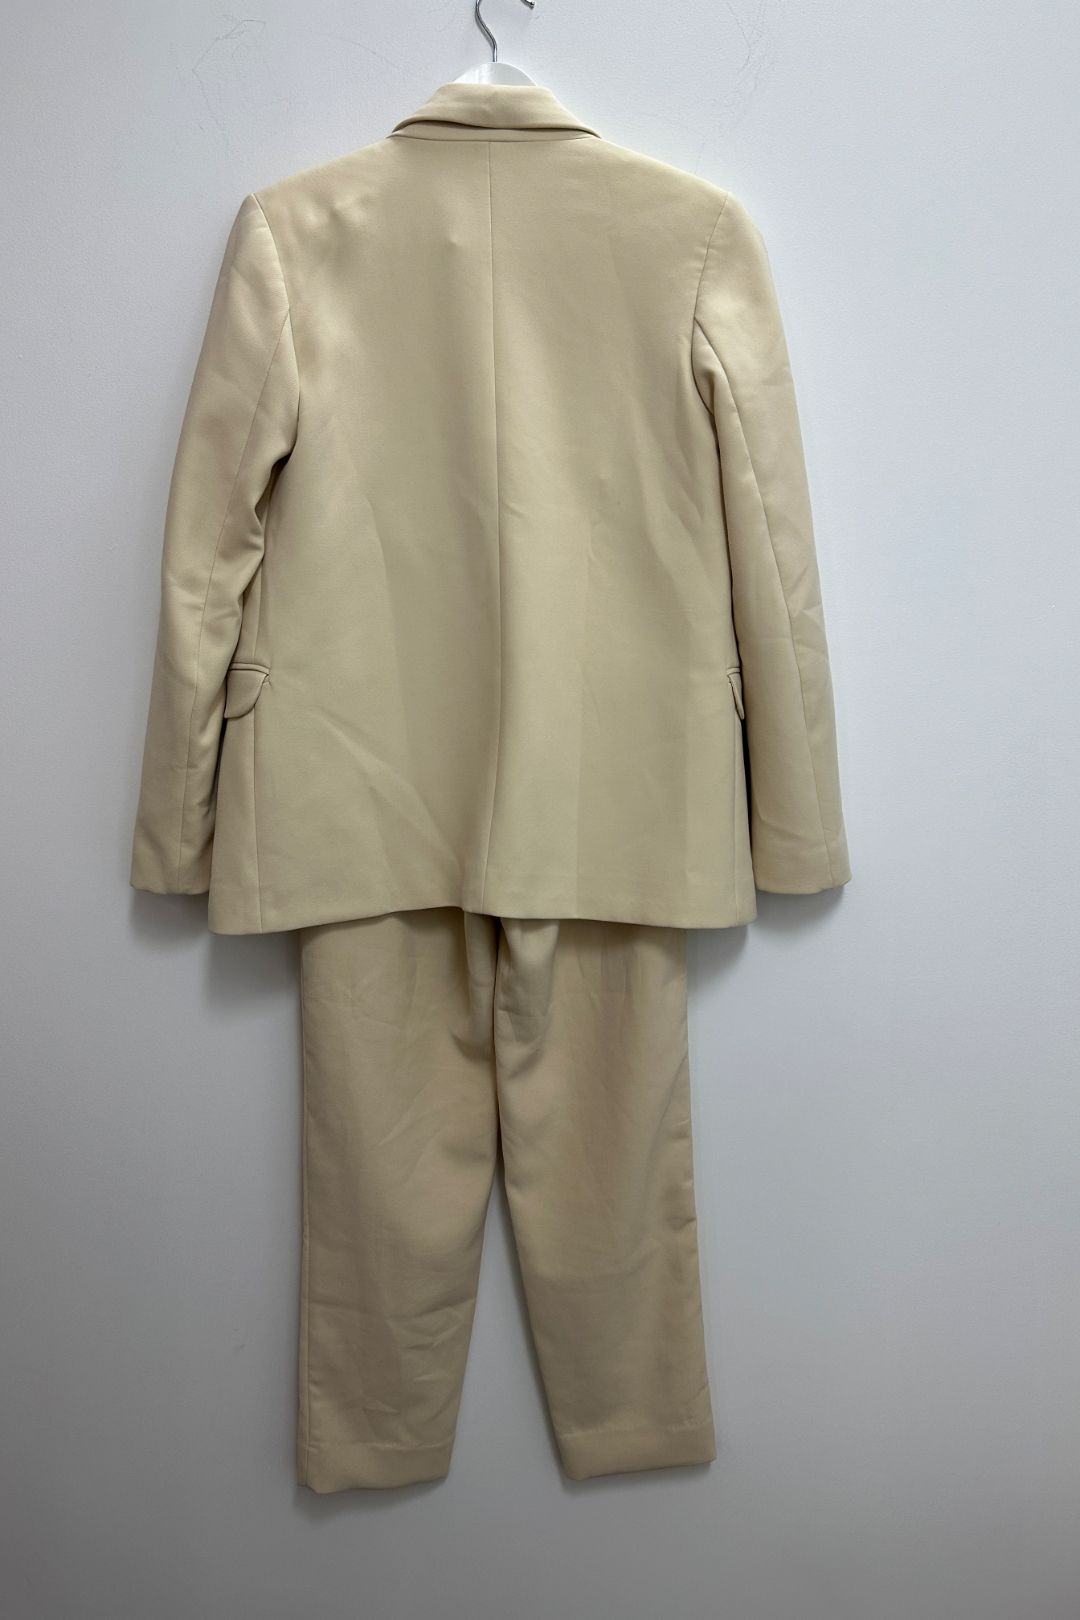 Kookai Tailored Jacket and Pants Set in Cream